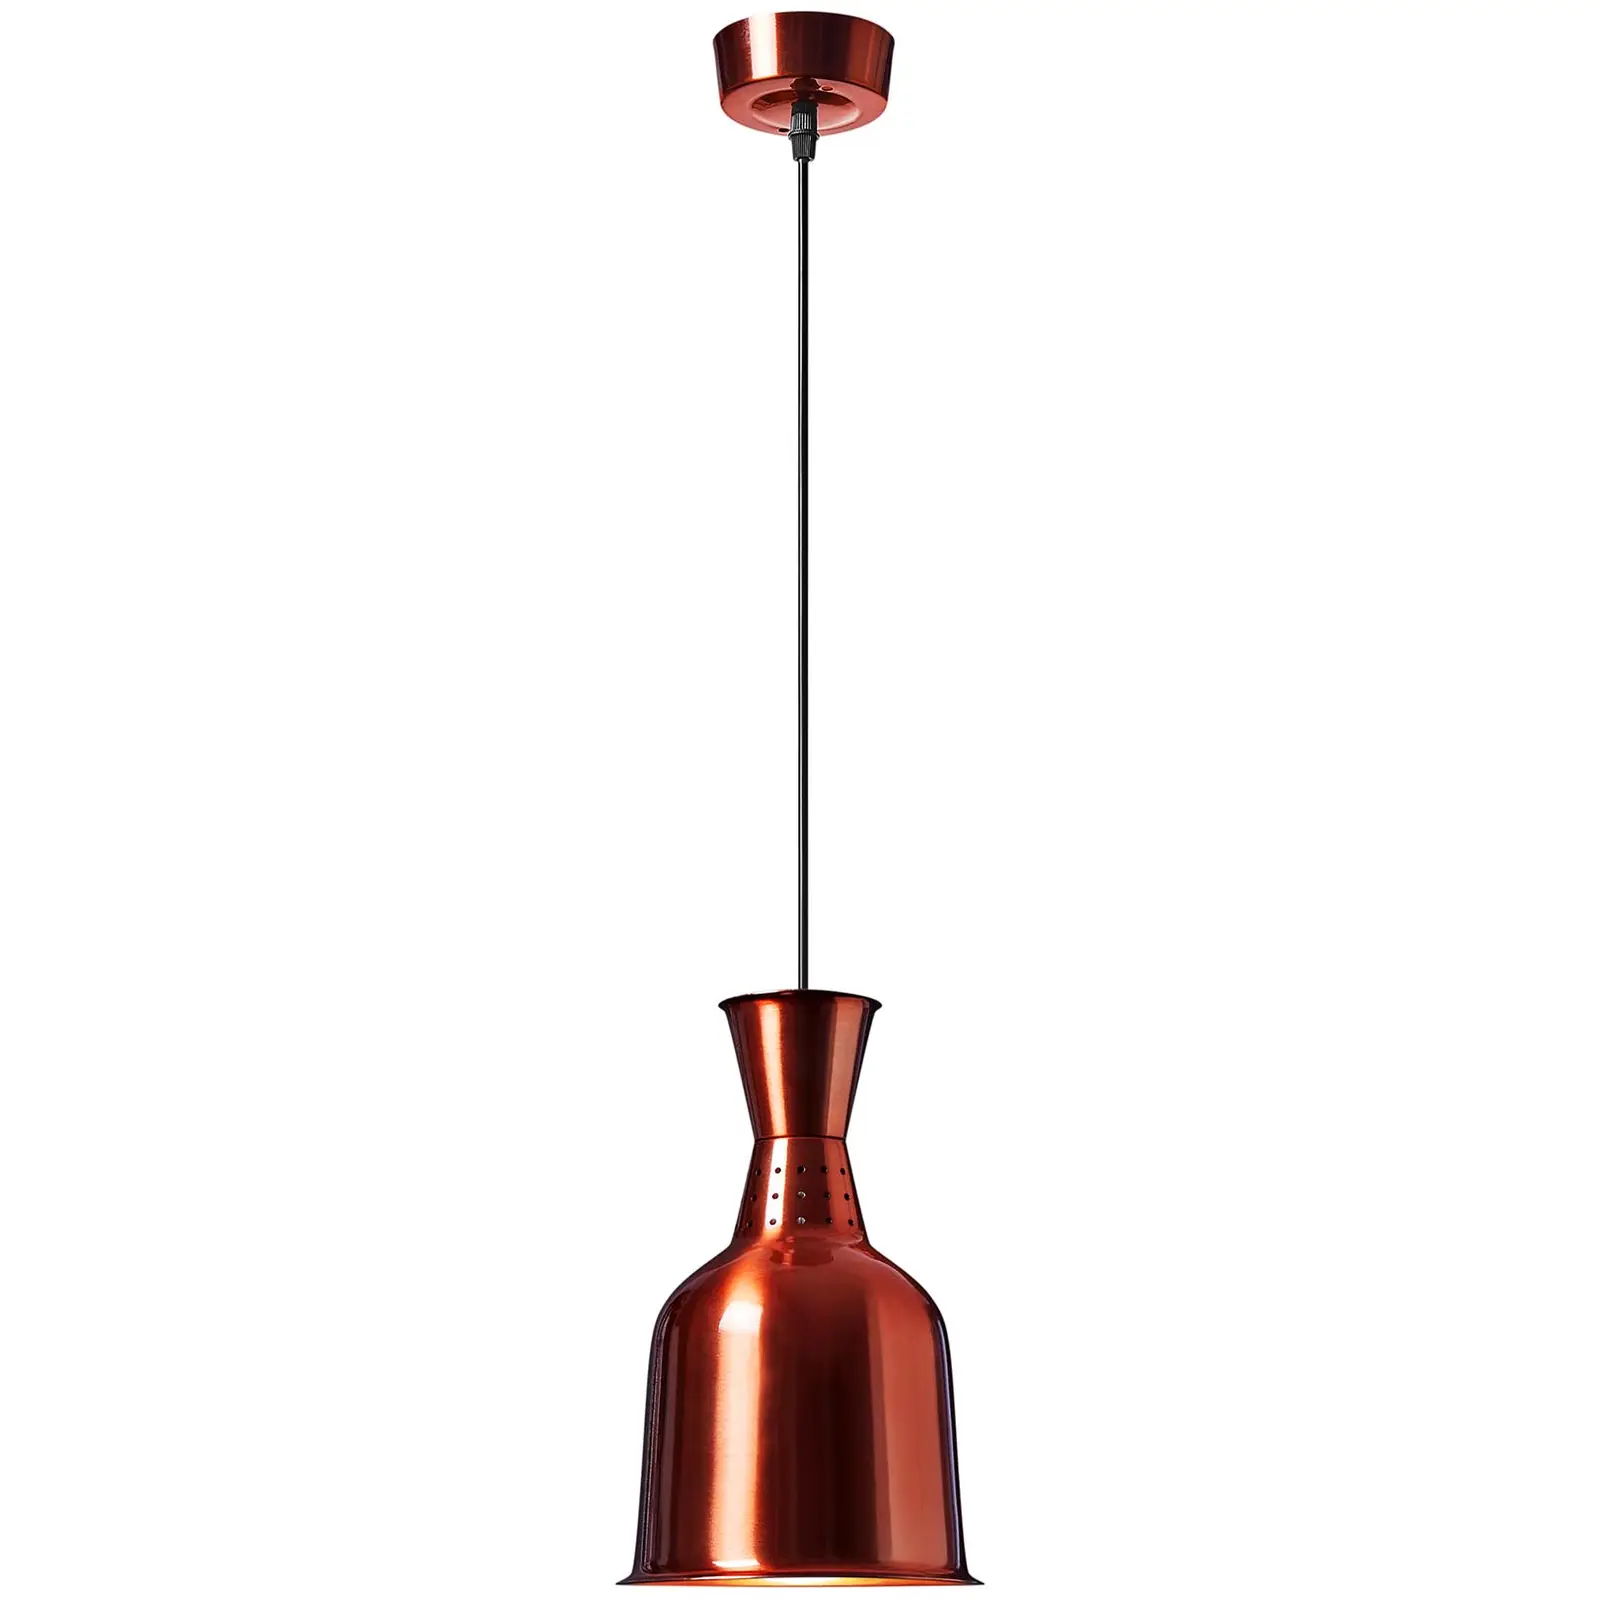 Melegentartó lámpa - sárgaréz megjelenés- 19 x 19 x 29 cm - Royal Catering - acél